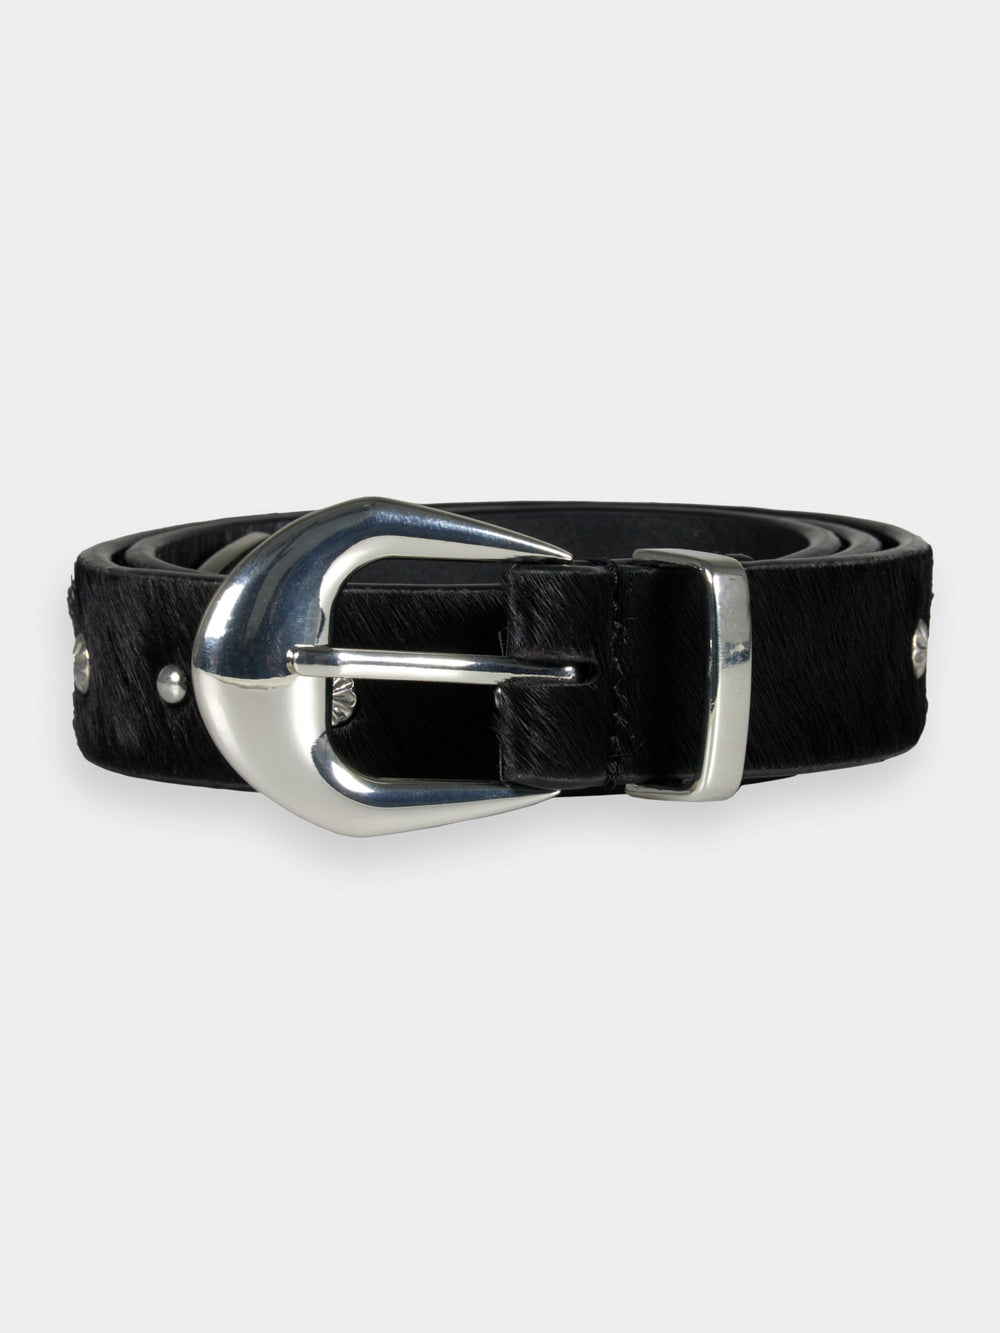 Studded leather belt - Scotch & Soda NZ